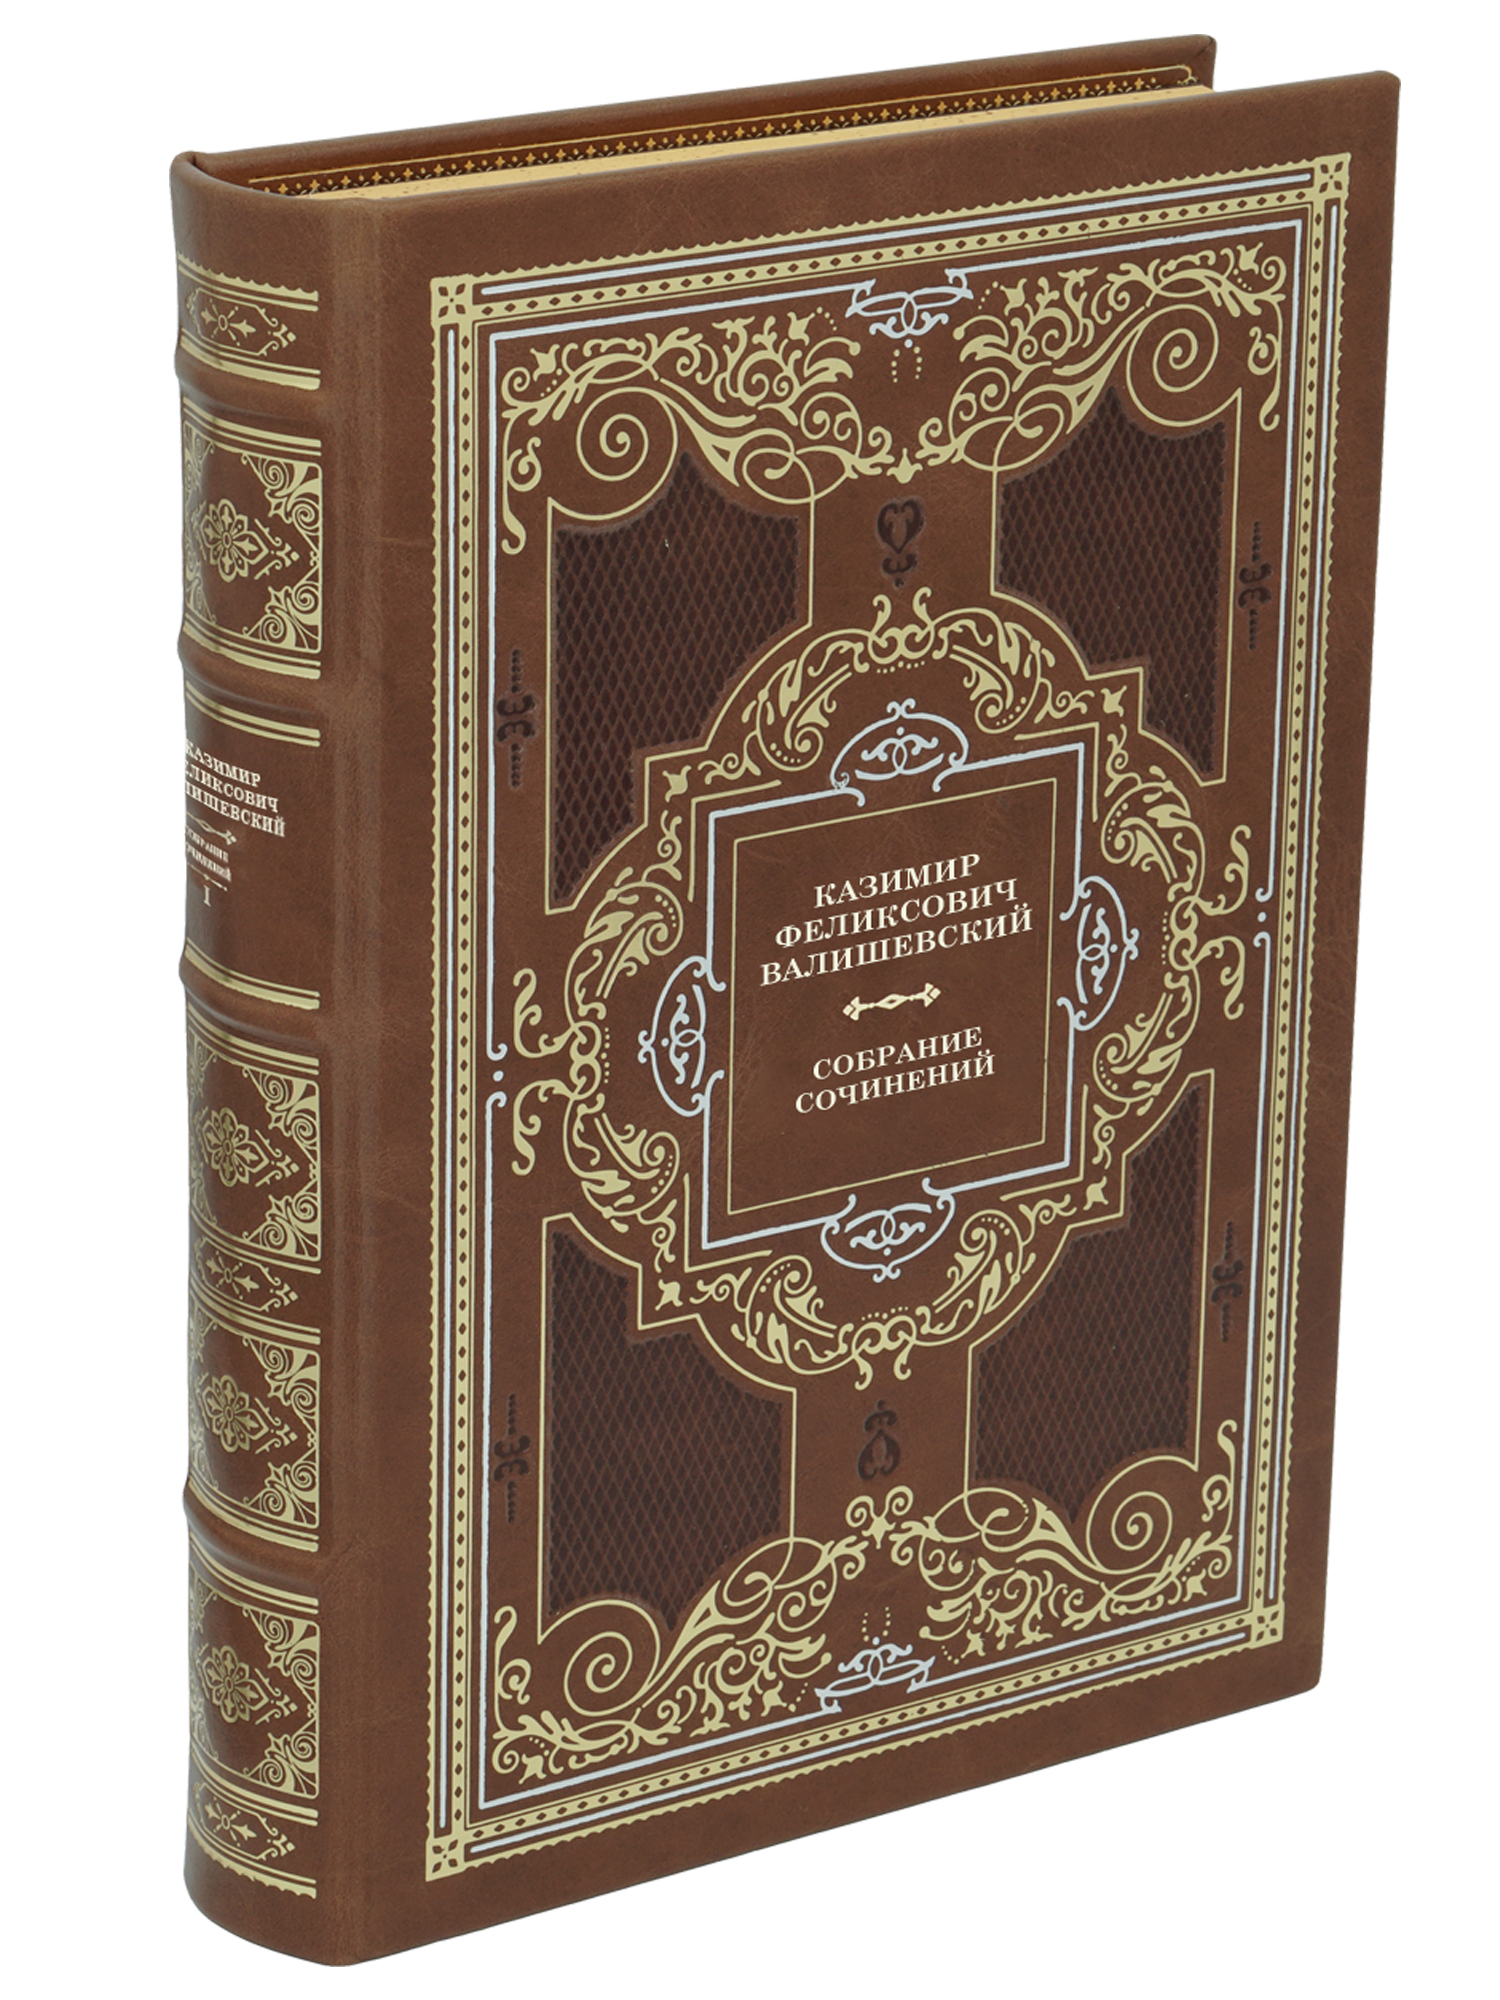 Собрание сочинений Валишевского К.Ф. в 9 томах в дизайне «Барокко»